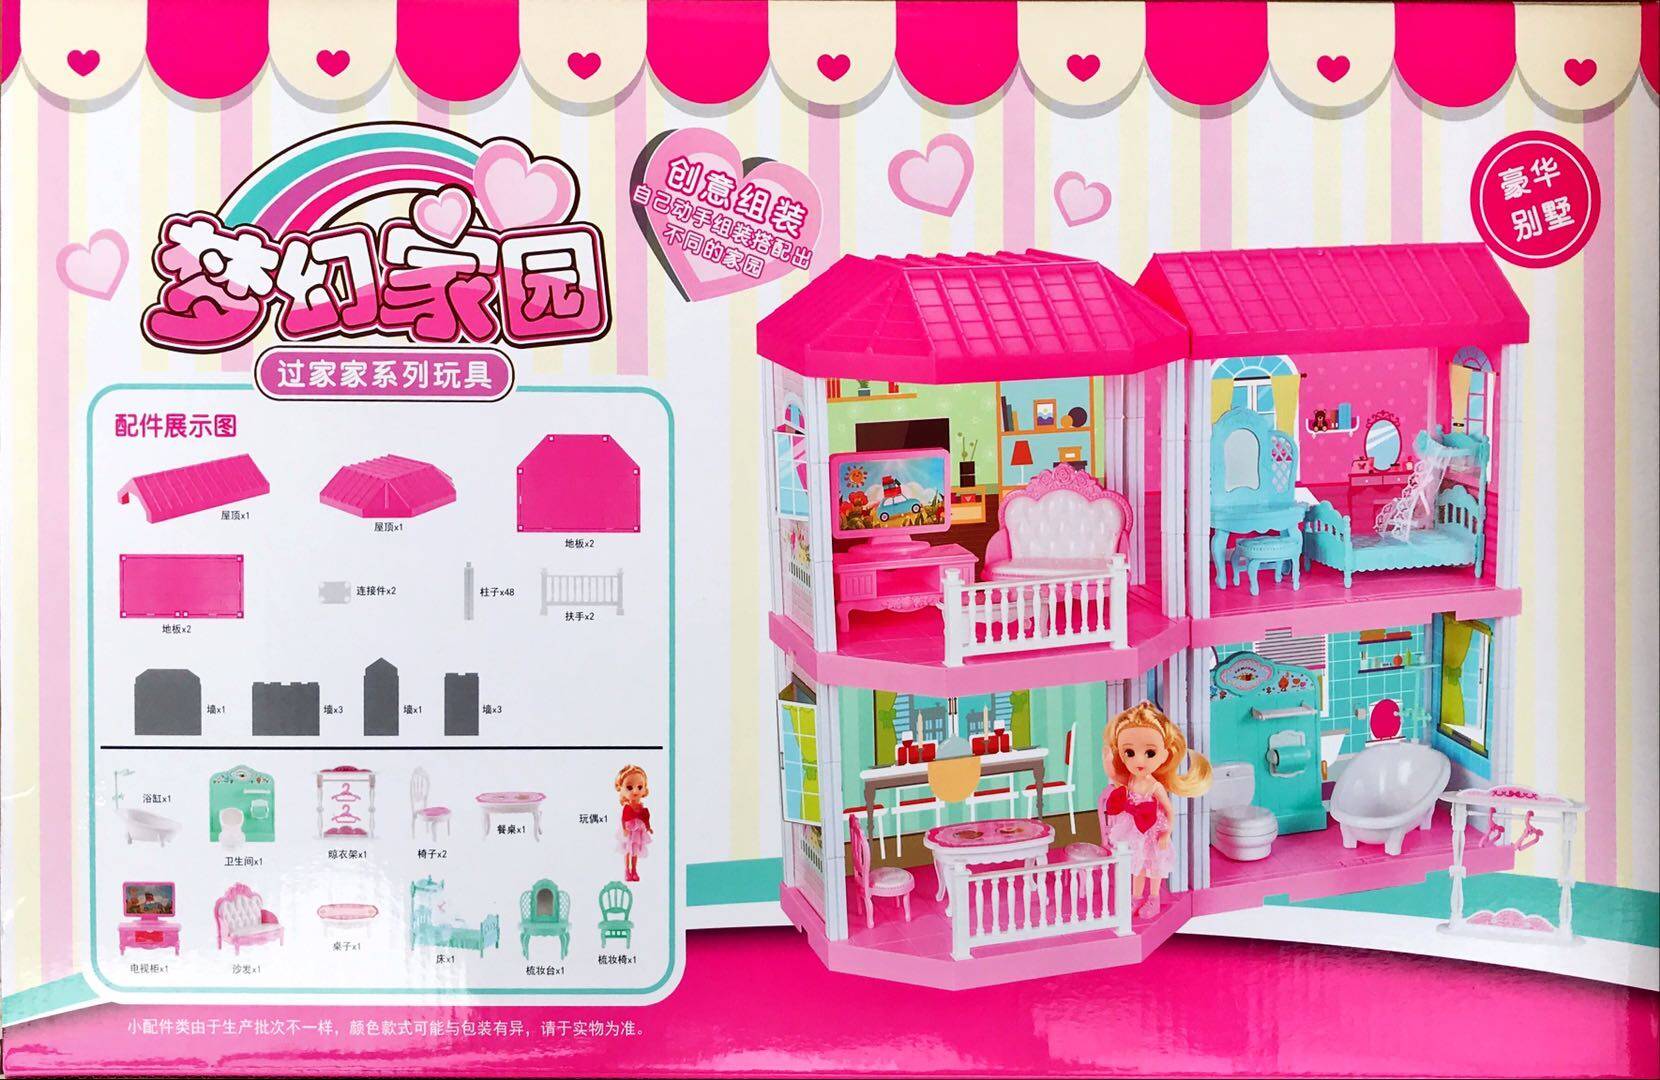 บ้านตุ๊กตา ตุ๊กตา 2 ชั้น บ้านจำลองเฟอร์นิเจอร์ชุดสำหรับ Barbie ตุ๊กตาบาร์บี้